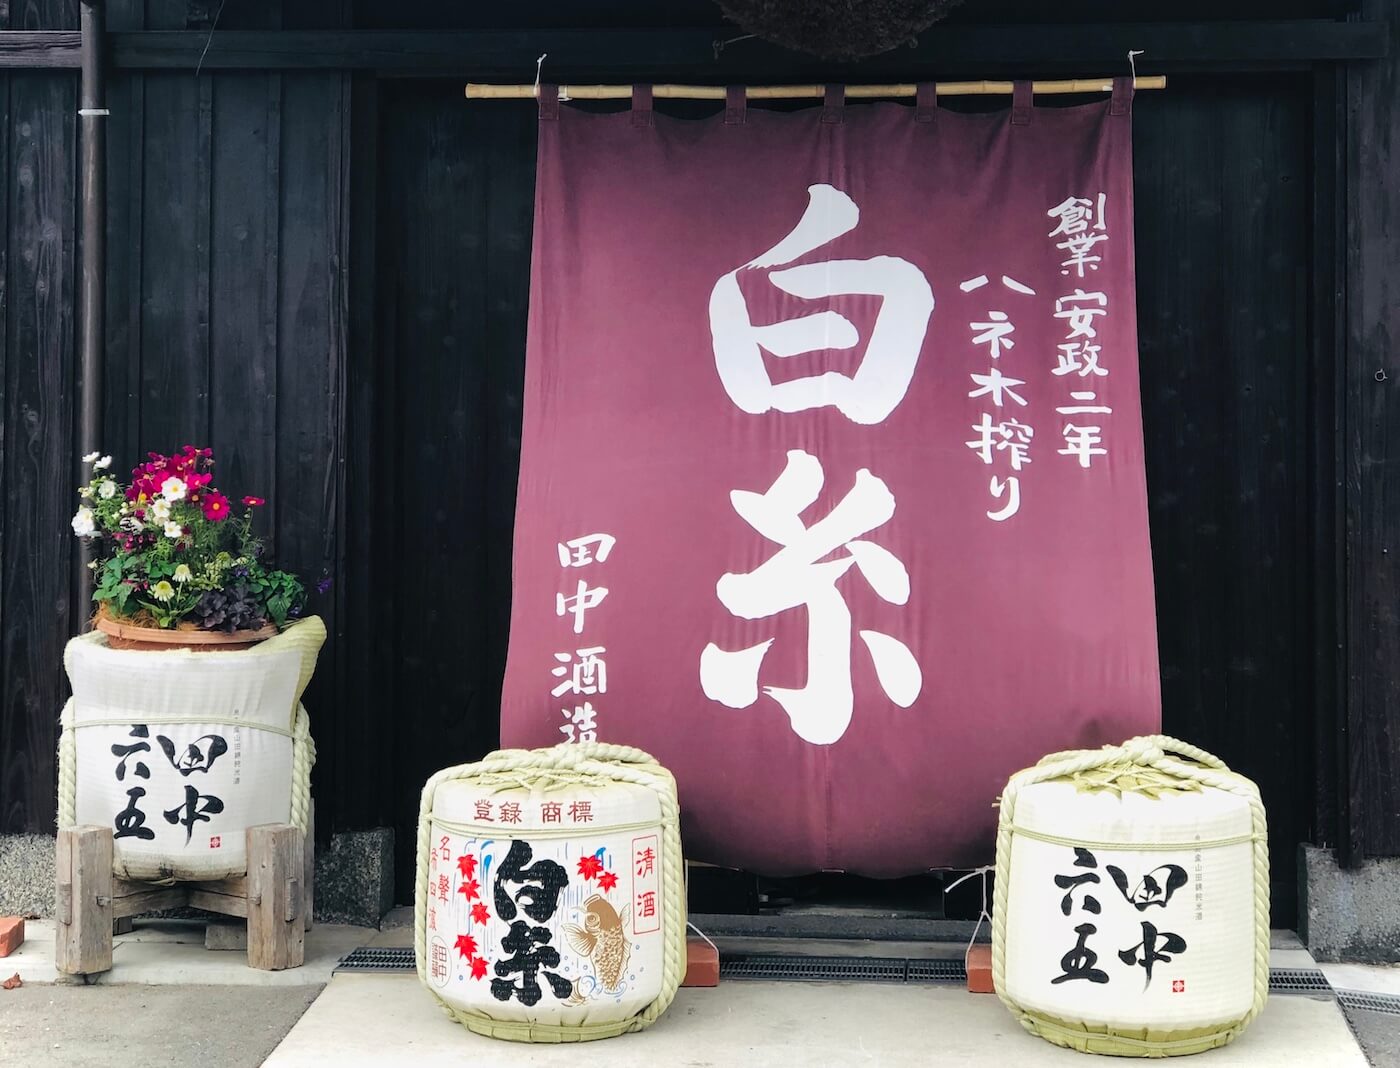 Shiraito Shuzo Haneki Festival, 白糸酒造蔵開き「ハネ木まつり」